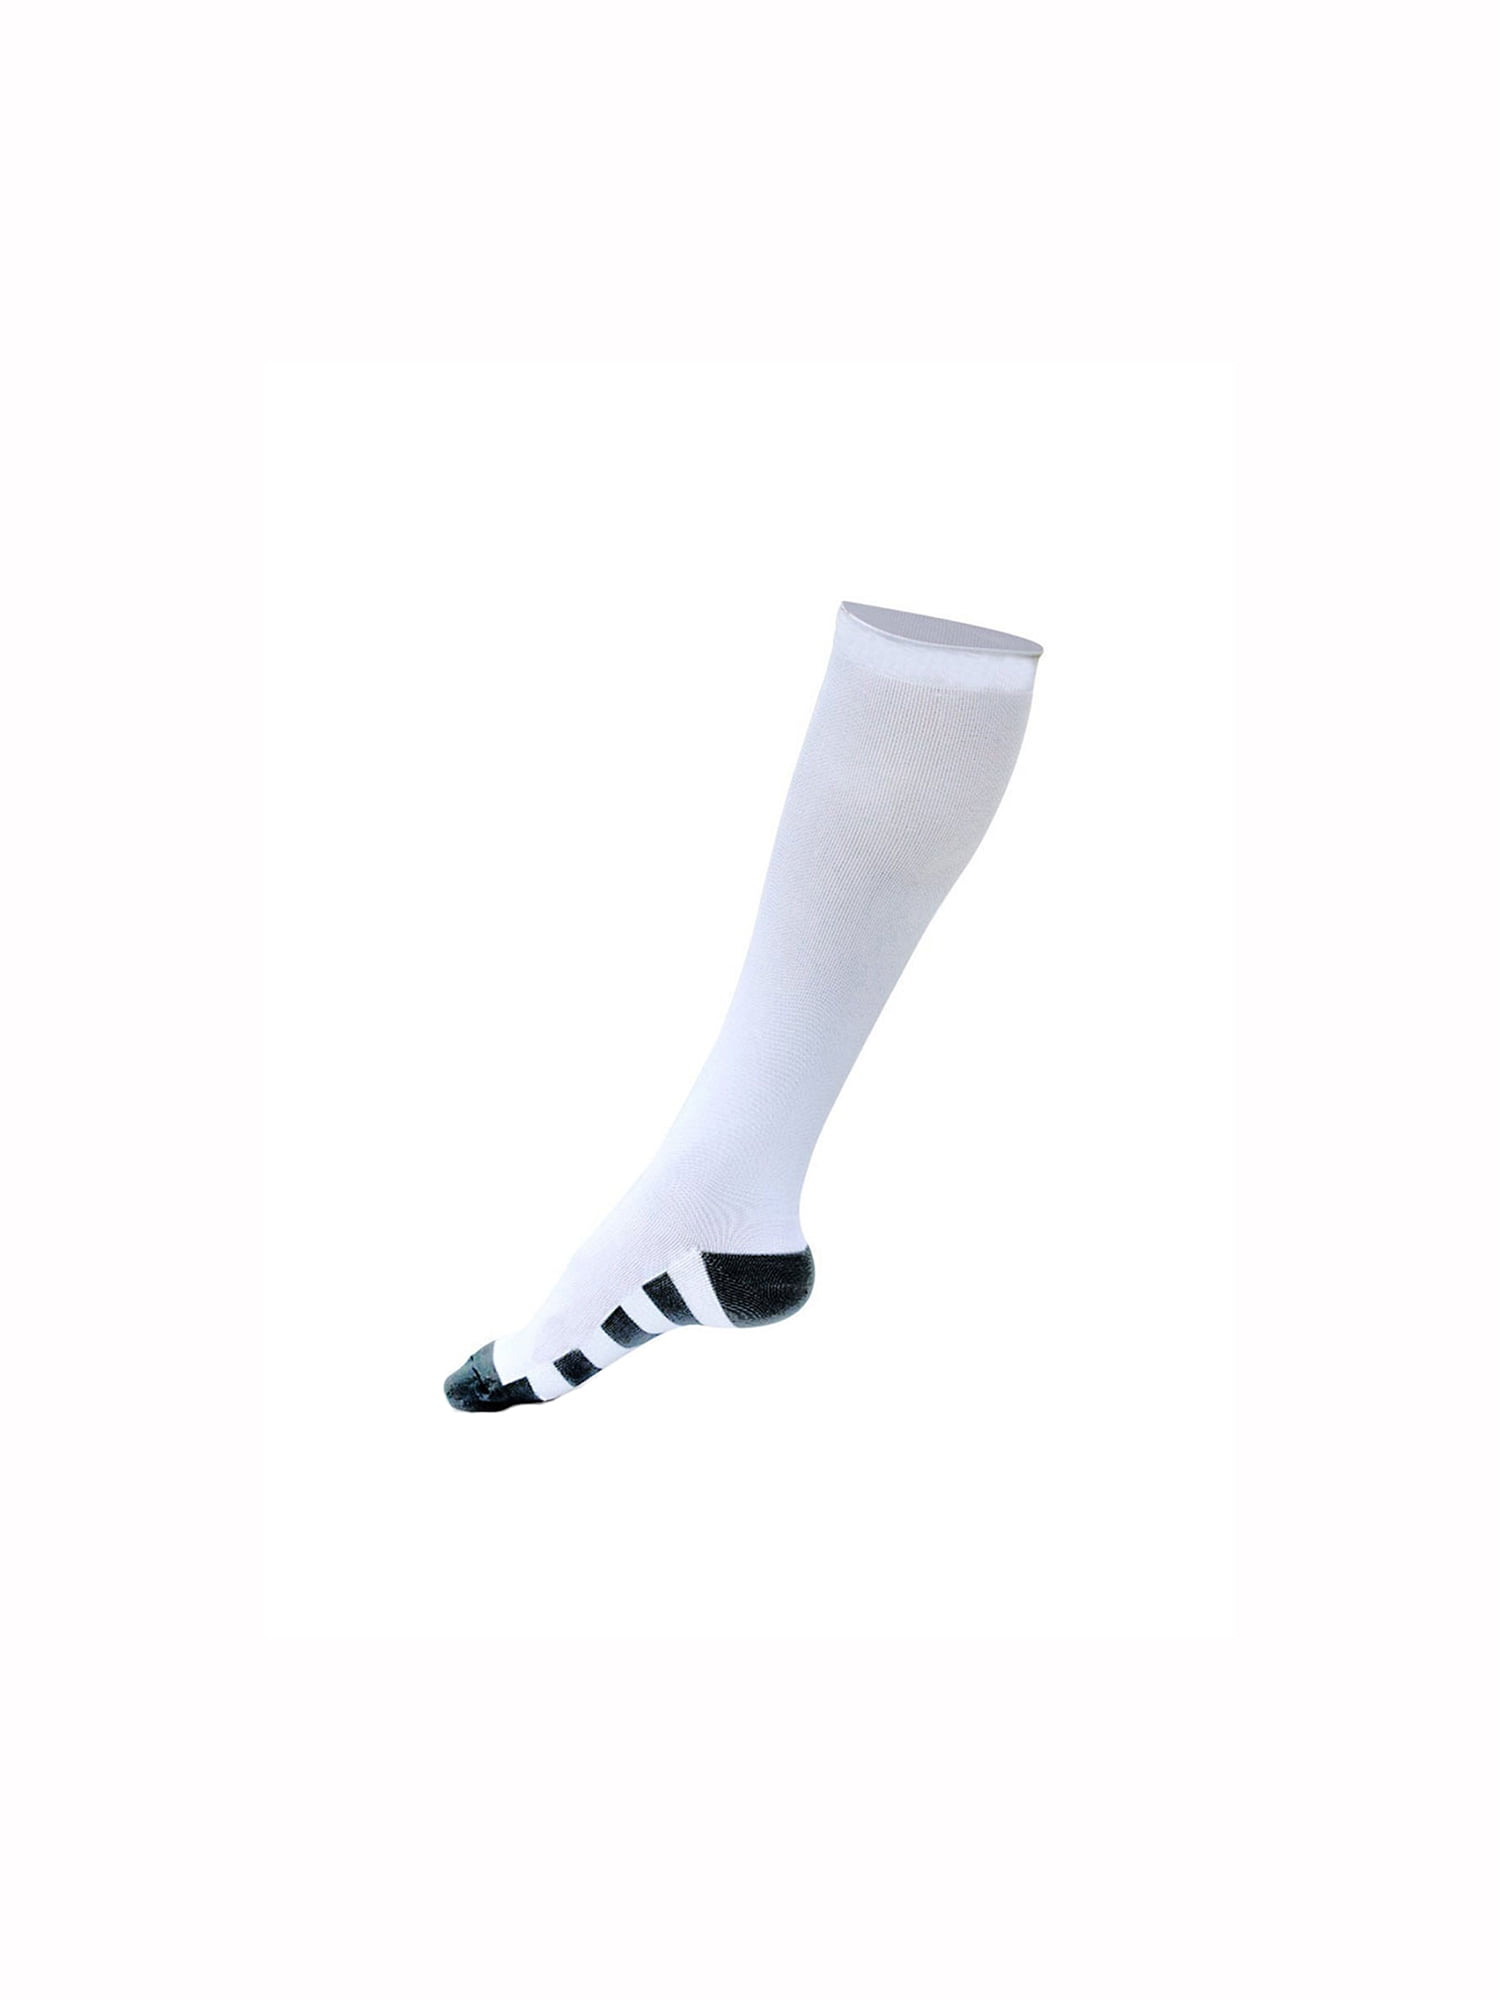 unique athletic socks